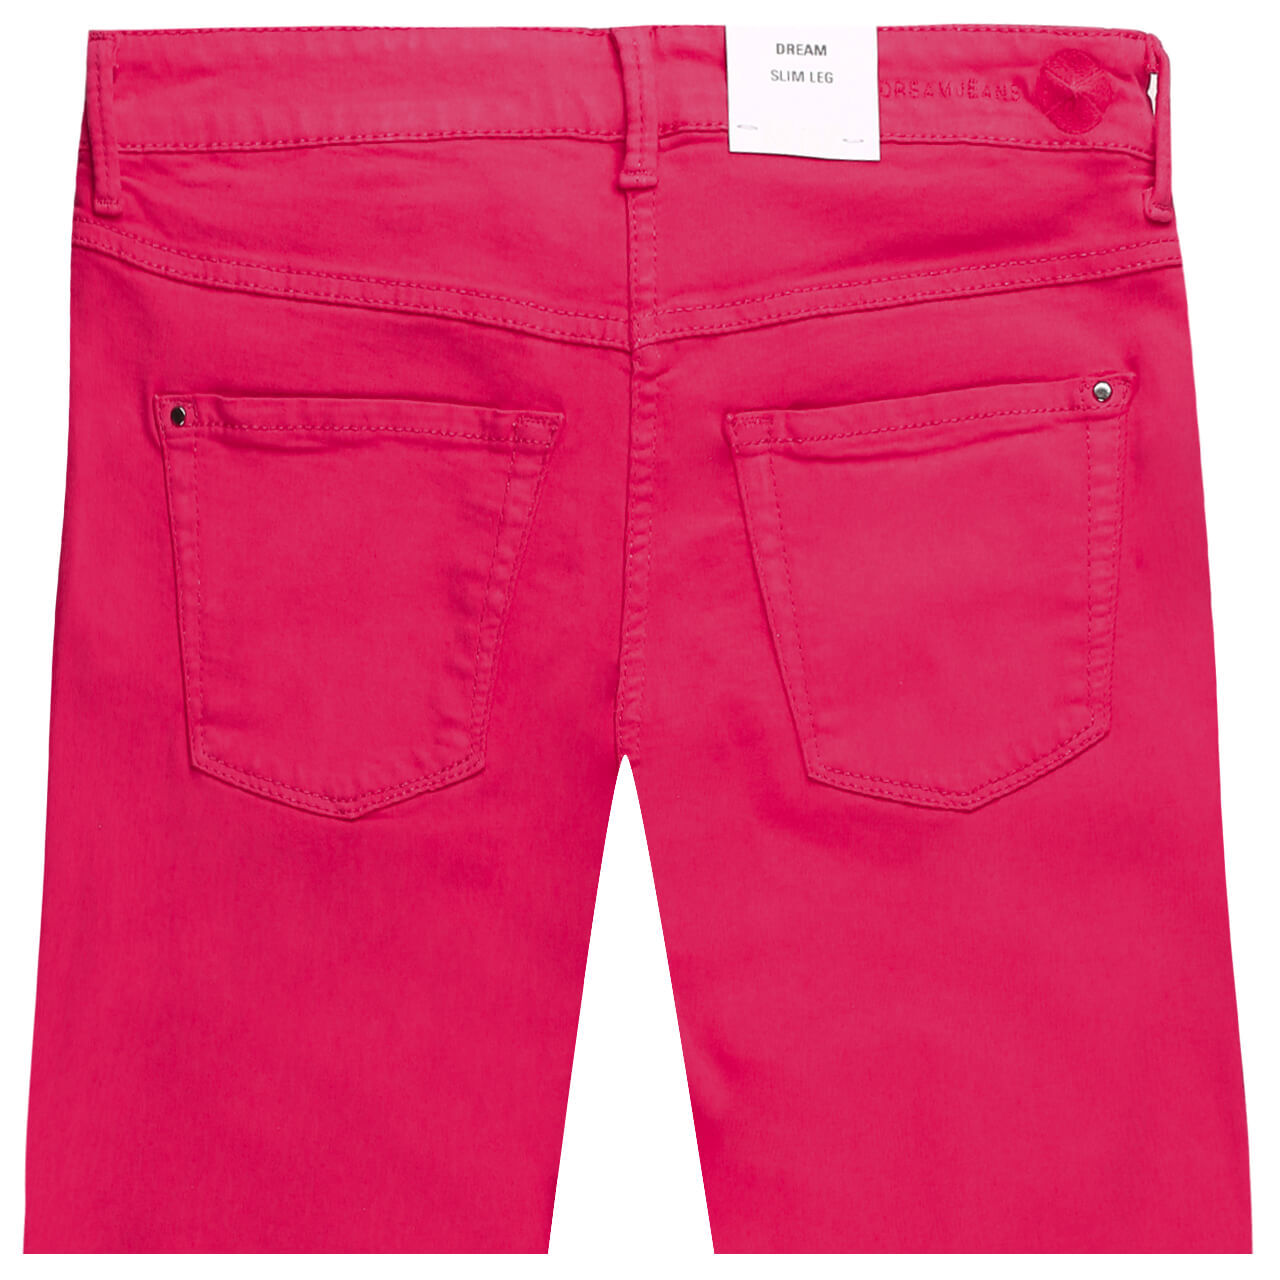 MAC Jeans Dream Chic für Damen in Pink, FarbNr.: 444R